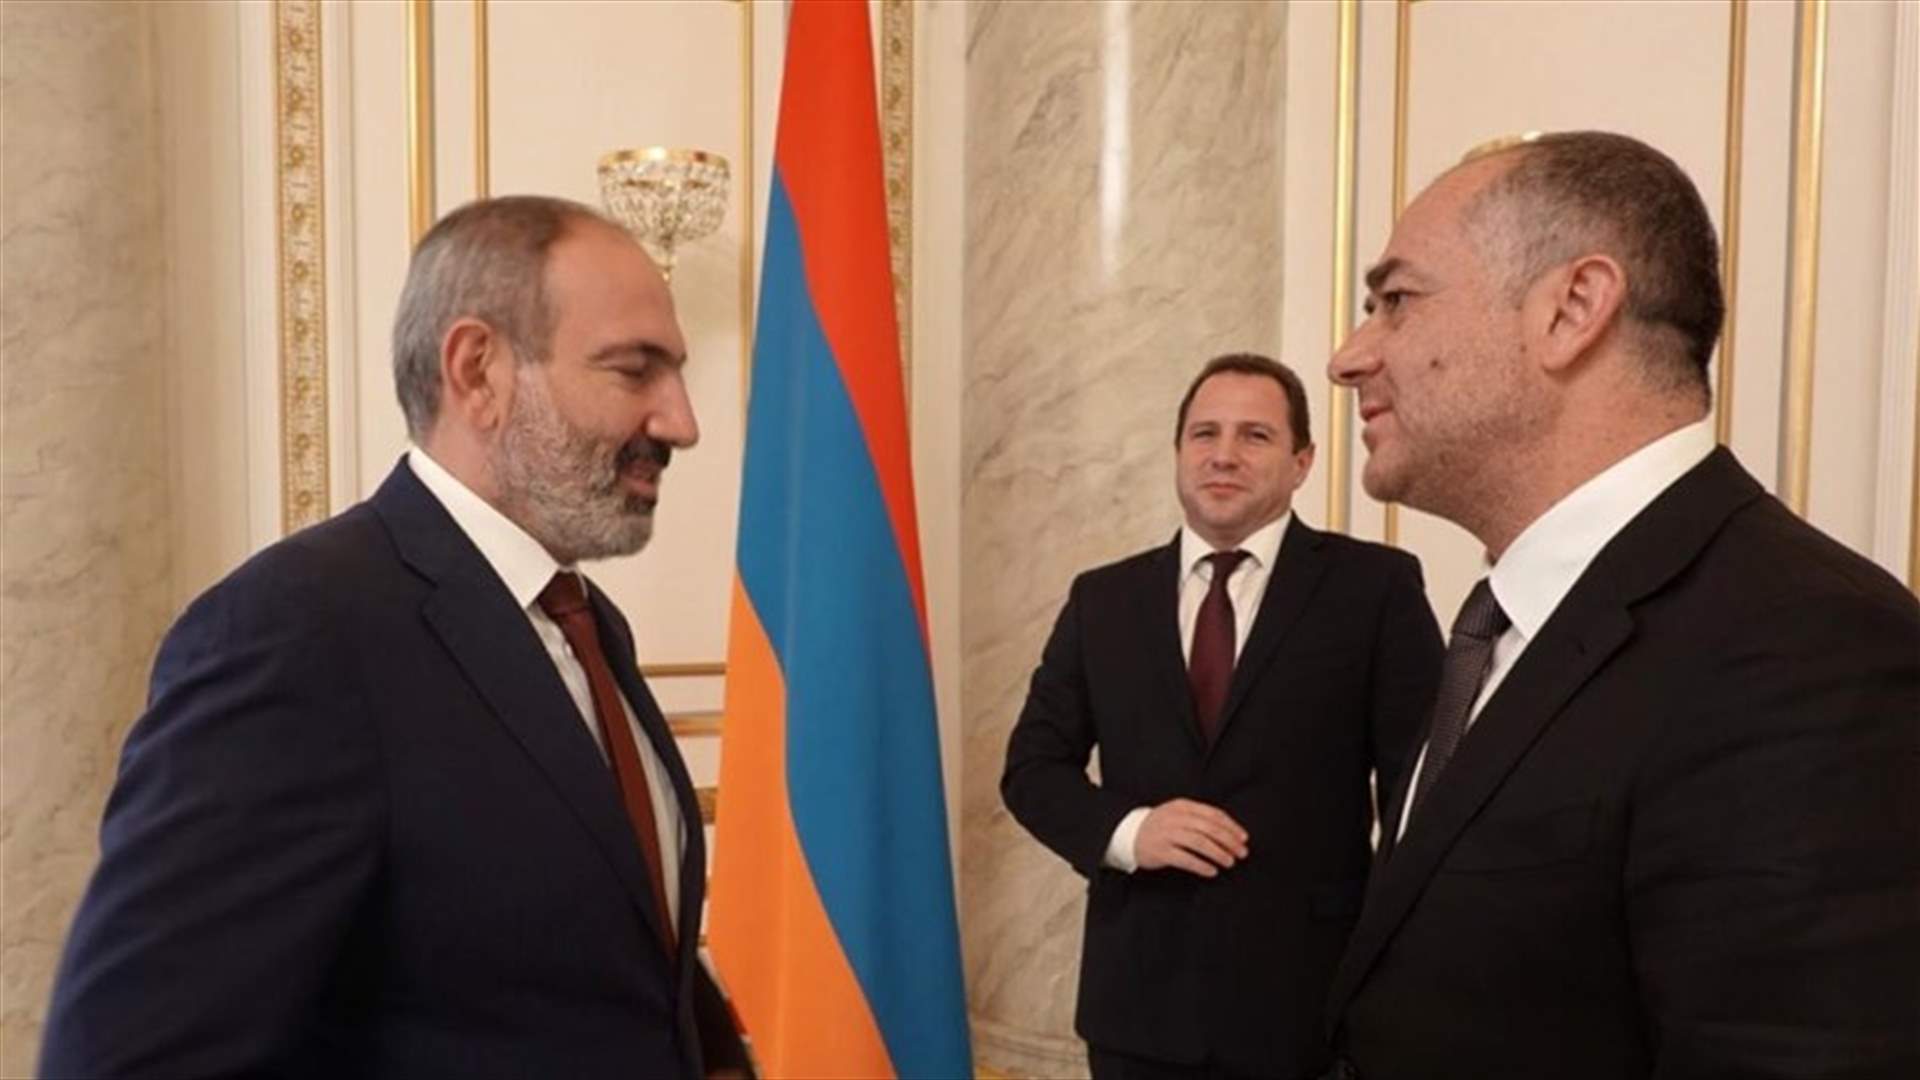 بو صعب التقى رئيس أرمينيا وبحث التعاون في مجال رصد الطائرات المسيرة